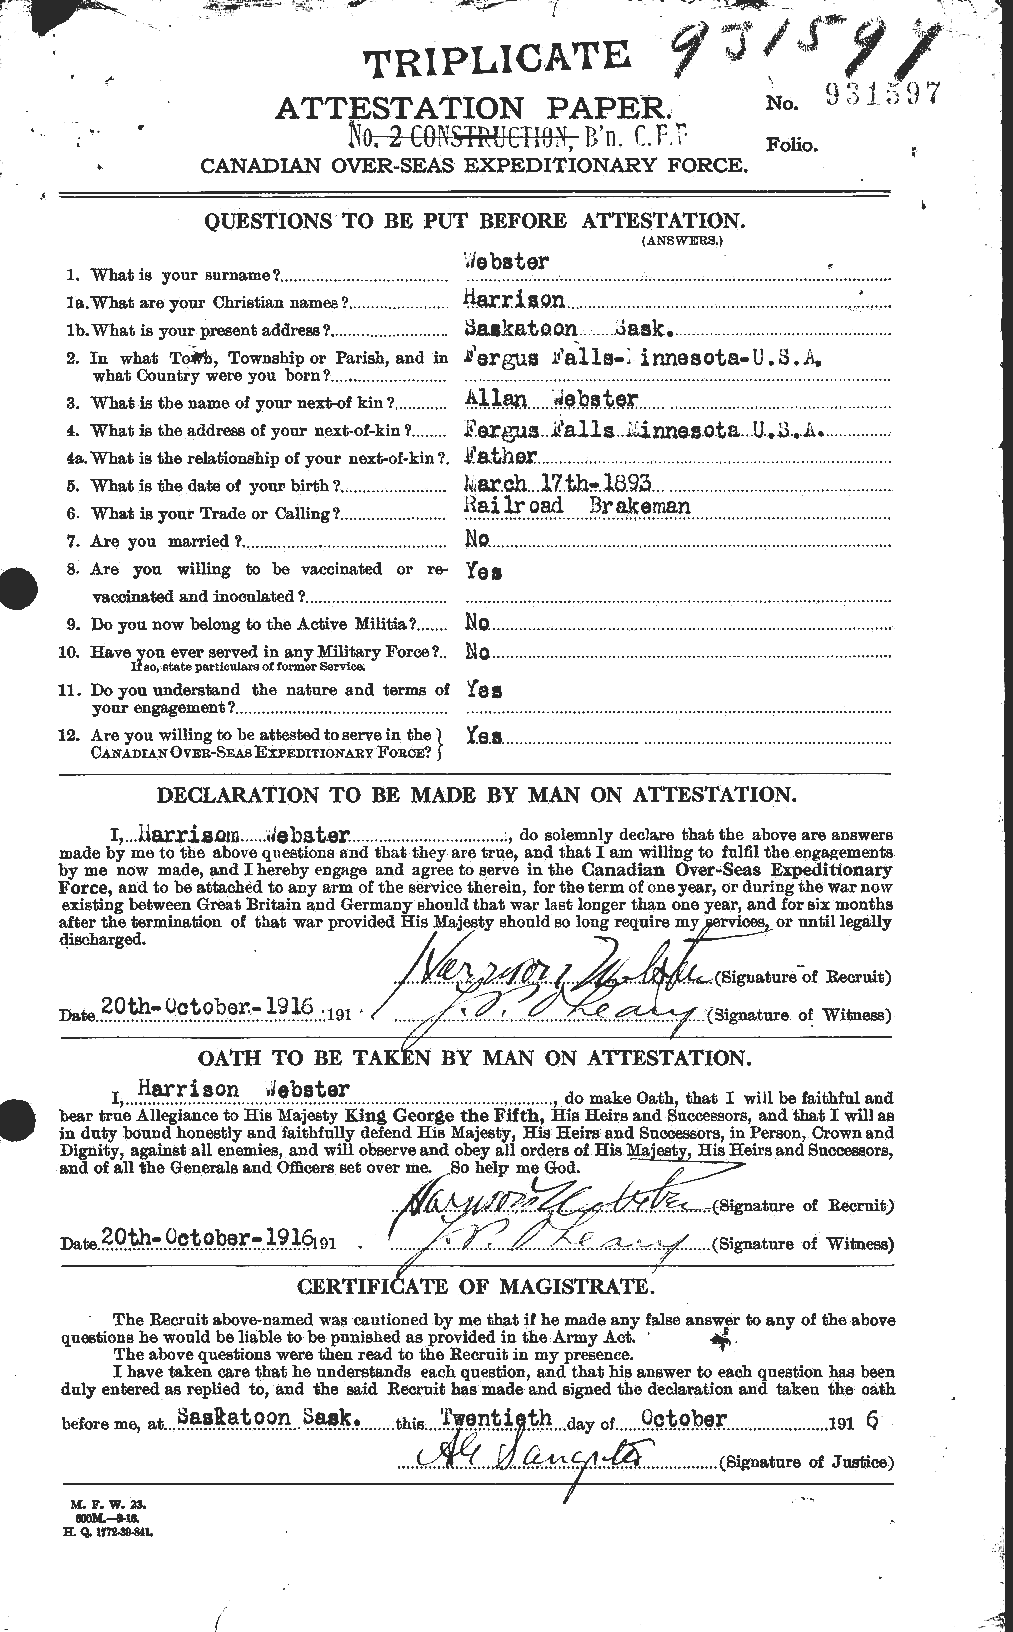 Dossiers du Personnel de la Première Guerre mondiale - CEC 670408a